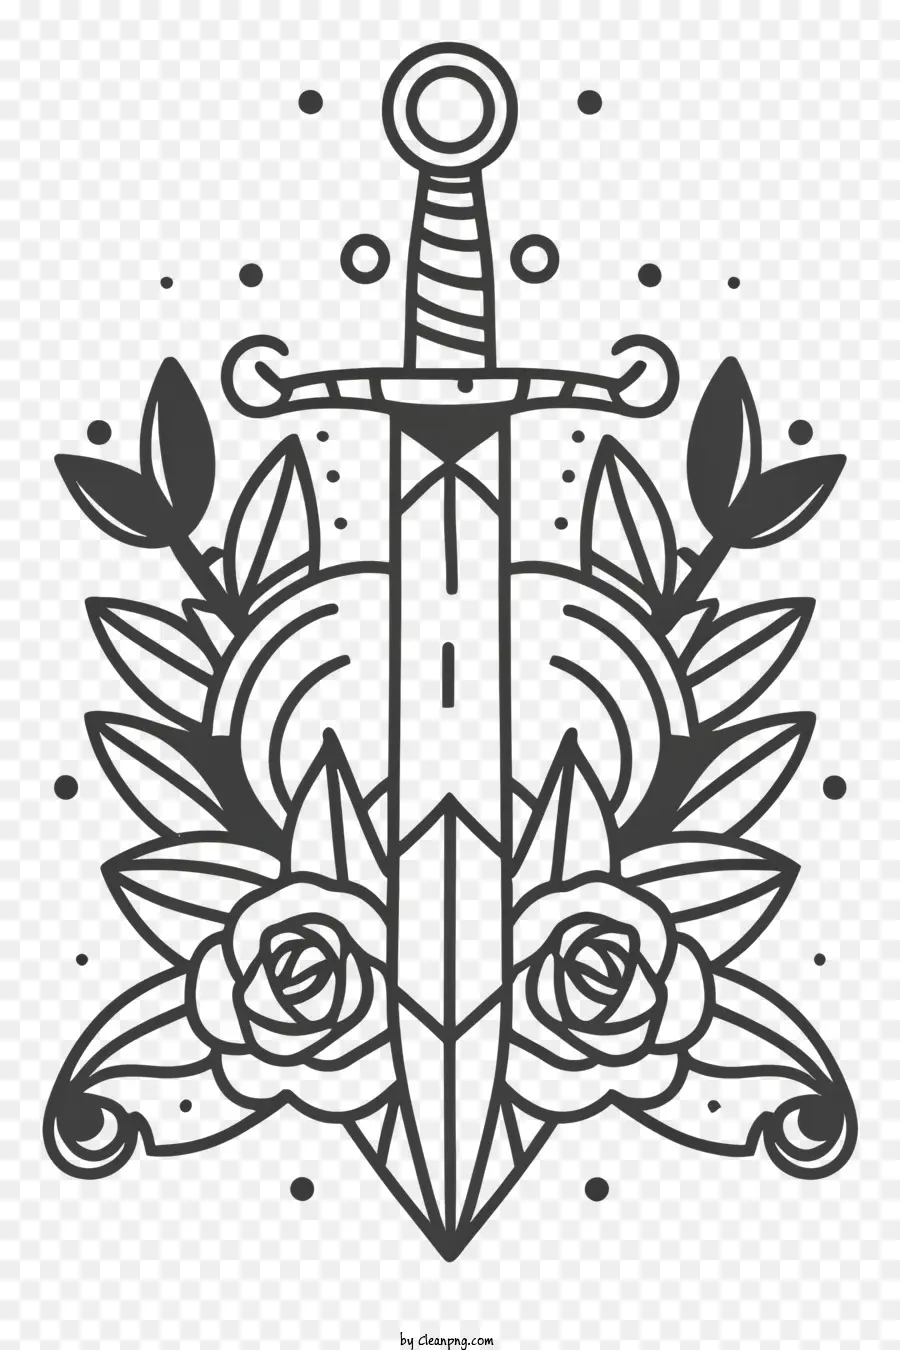 Design del tatuaggio della spada Simbolo del tatuaggio in bianco e nero del simbolo di potenza dei guerrieri e dei cavalieri di protezione - Tatuaggio in bianco e nero di spada e rose